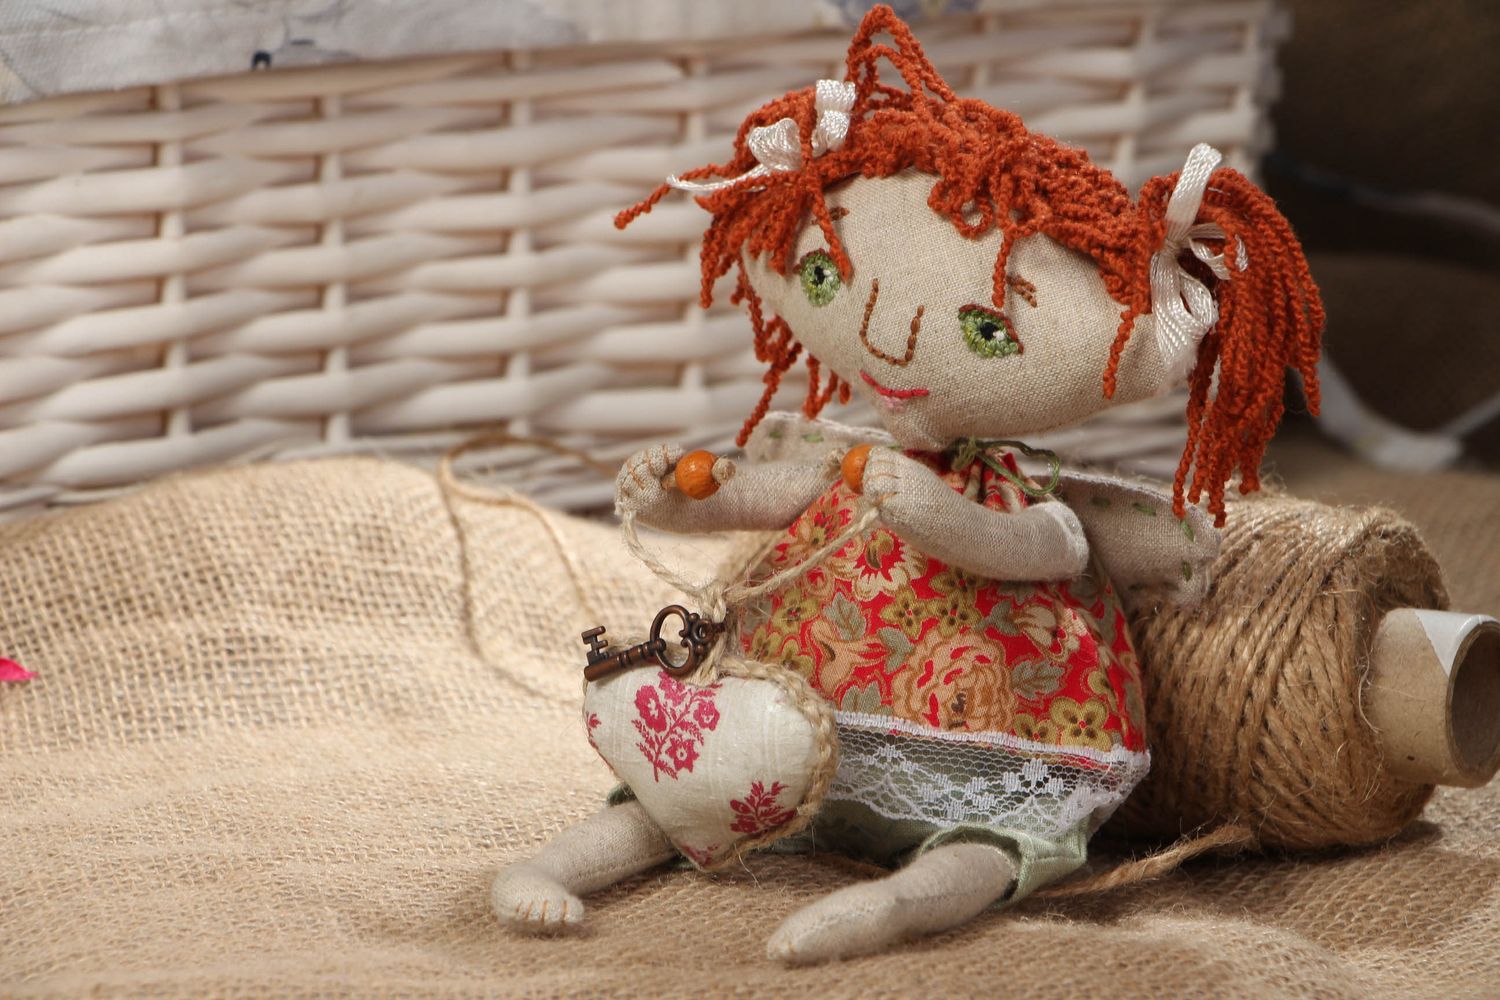 Textil Puppe handmade für Interieur foto 5